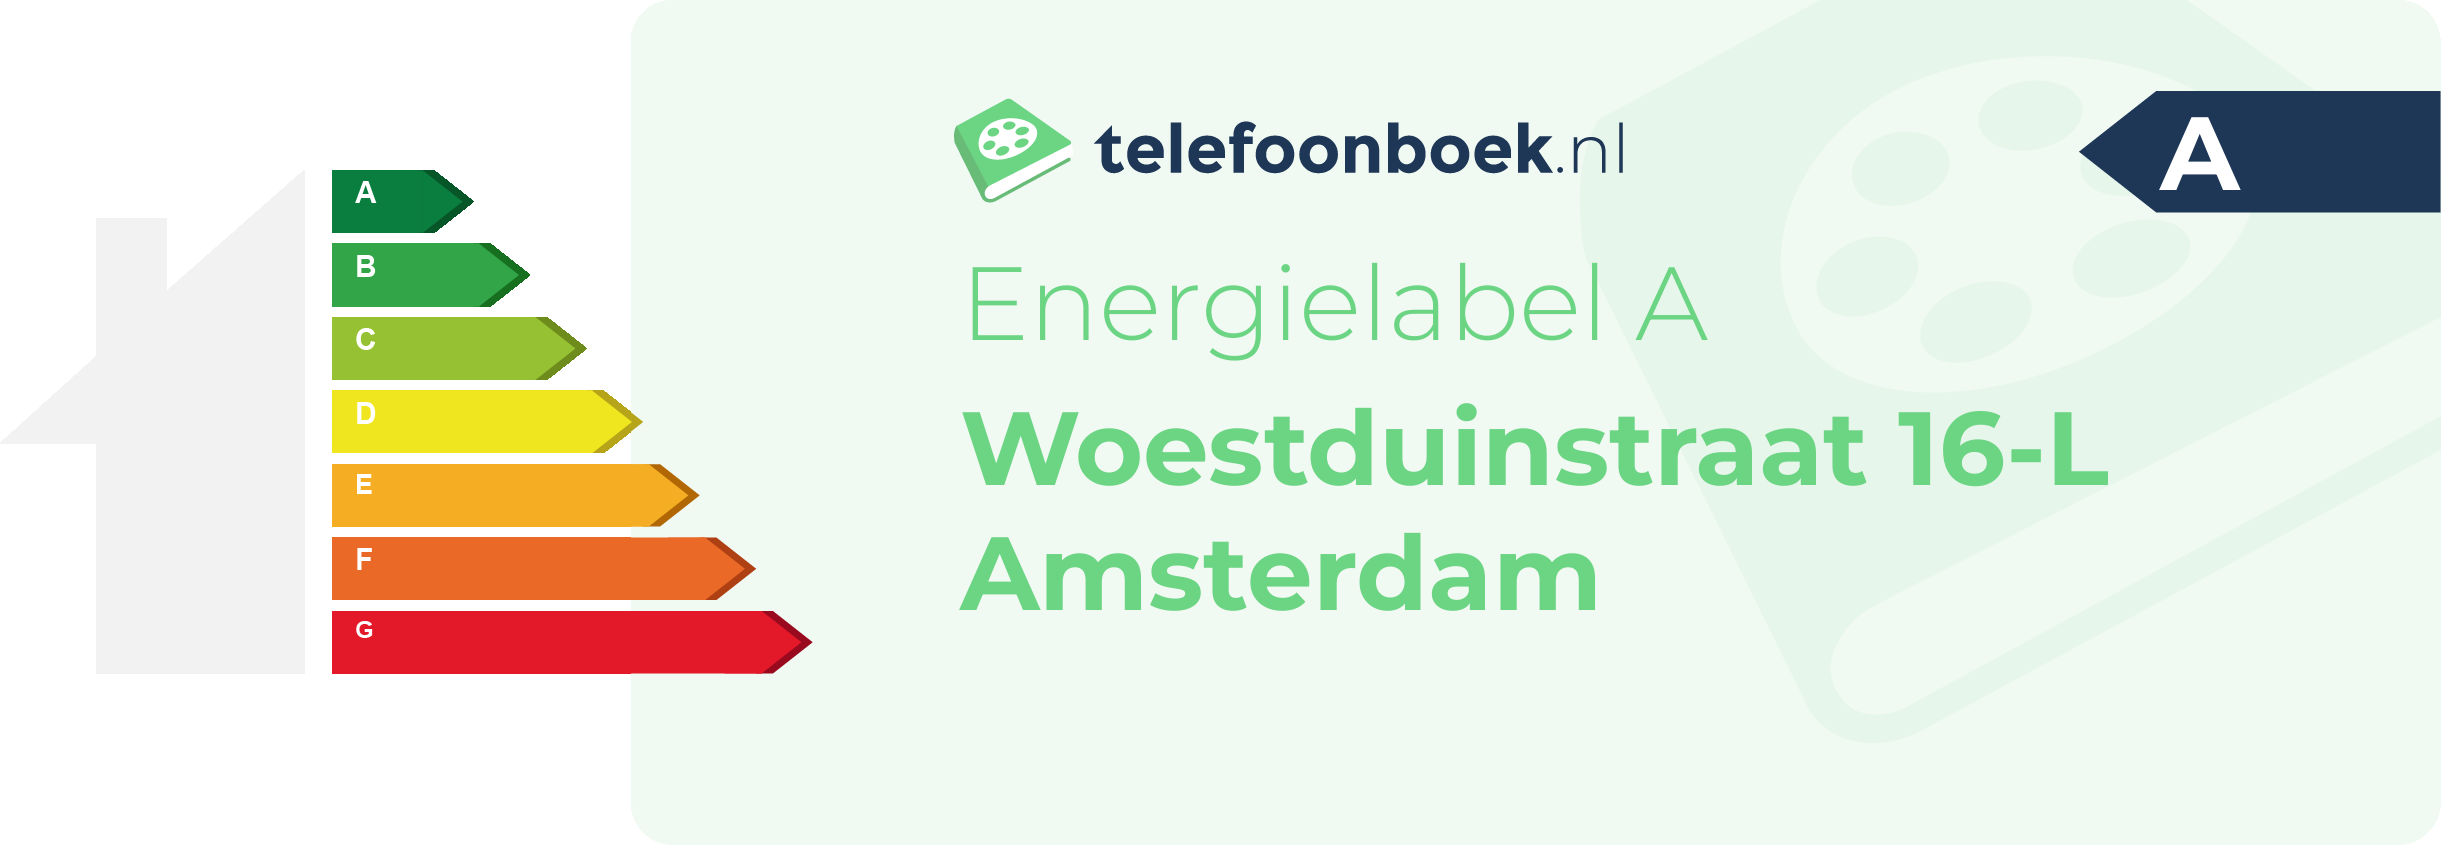 Energielabel Woestduinstraat 16-L Amsterdam